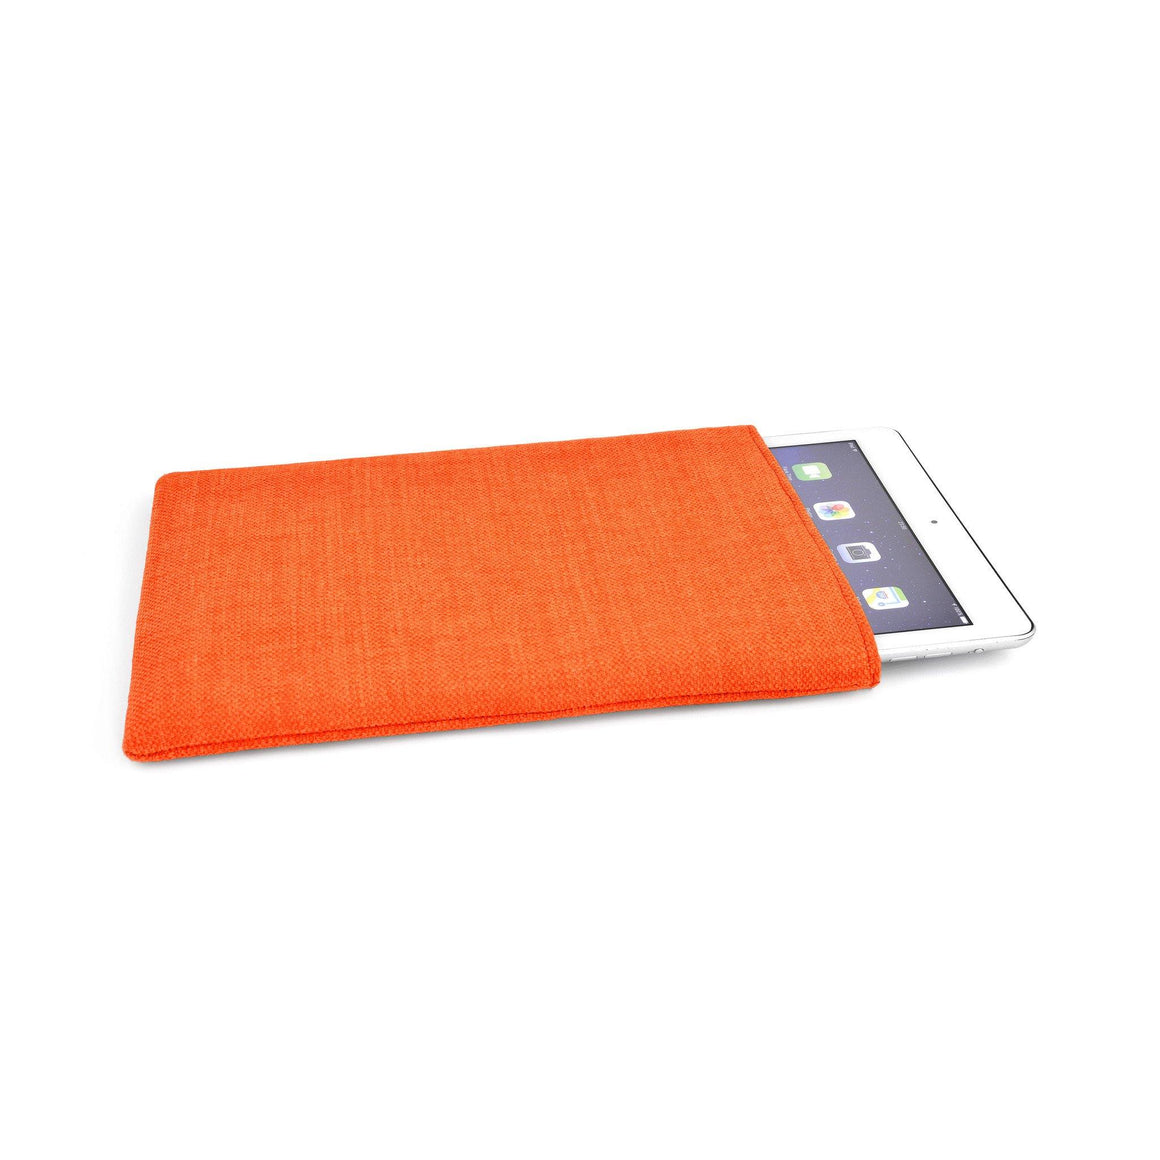 iPad Linen Tangerine - Wrappers UK